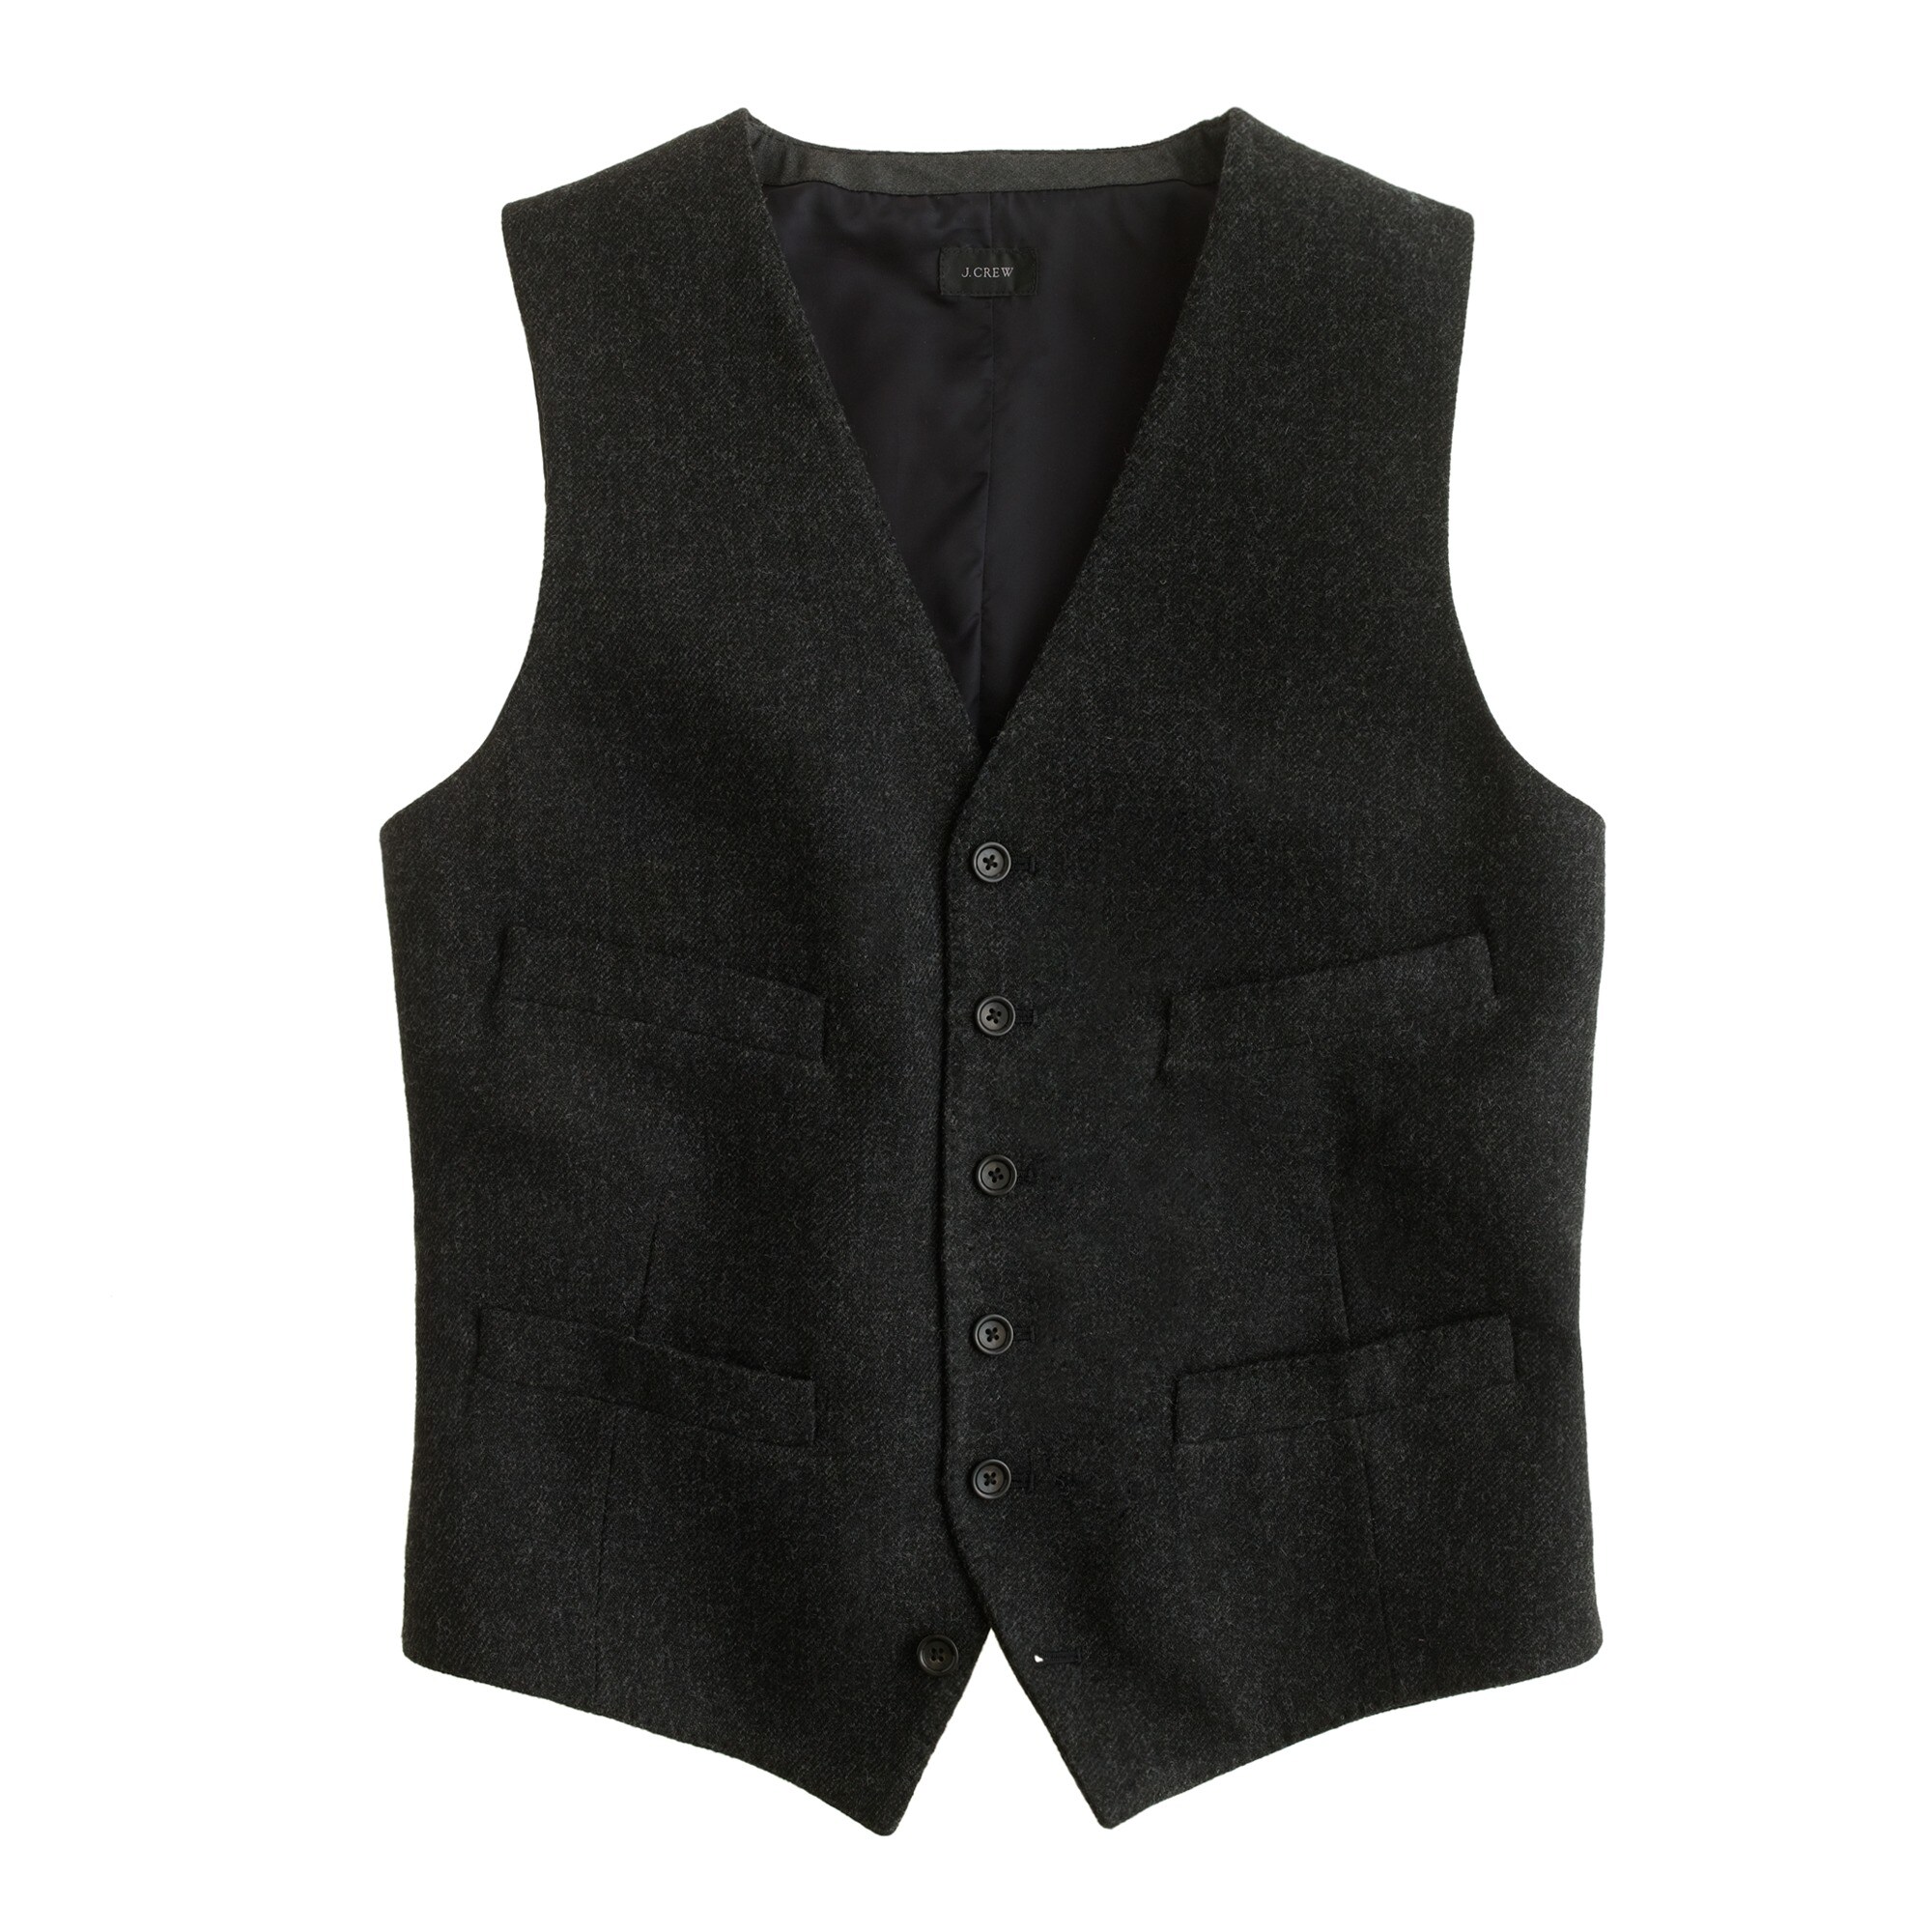 Ludlow vest in Italian wool : Men vests | J.Crew